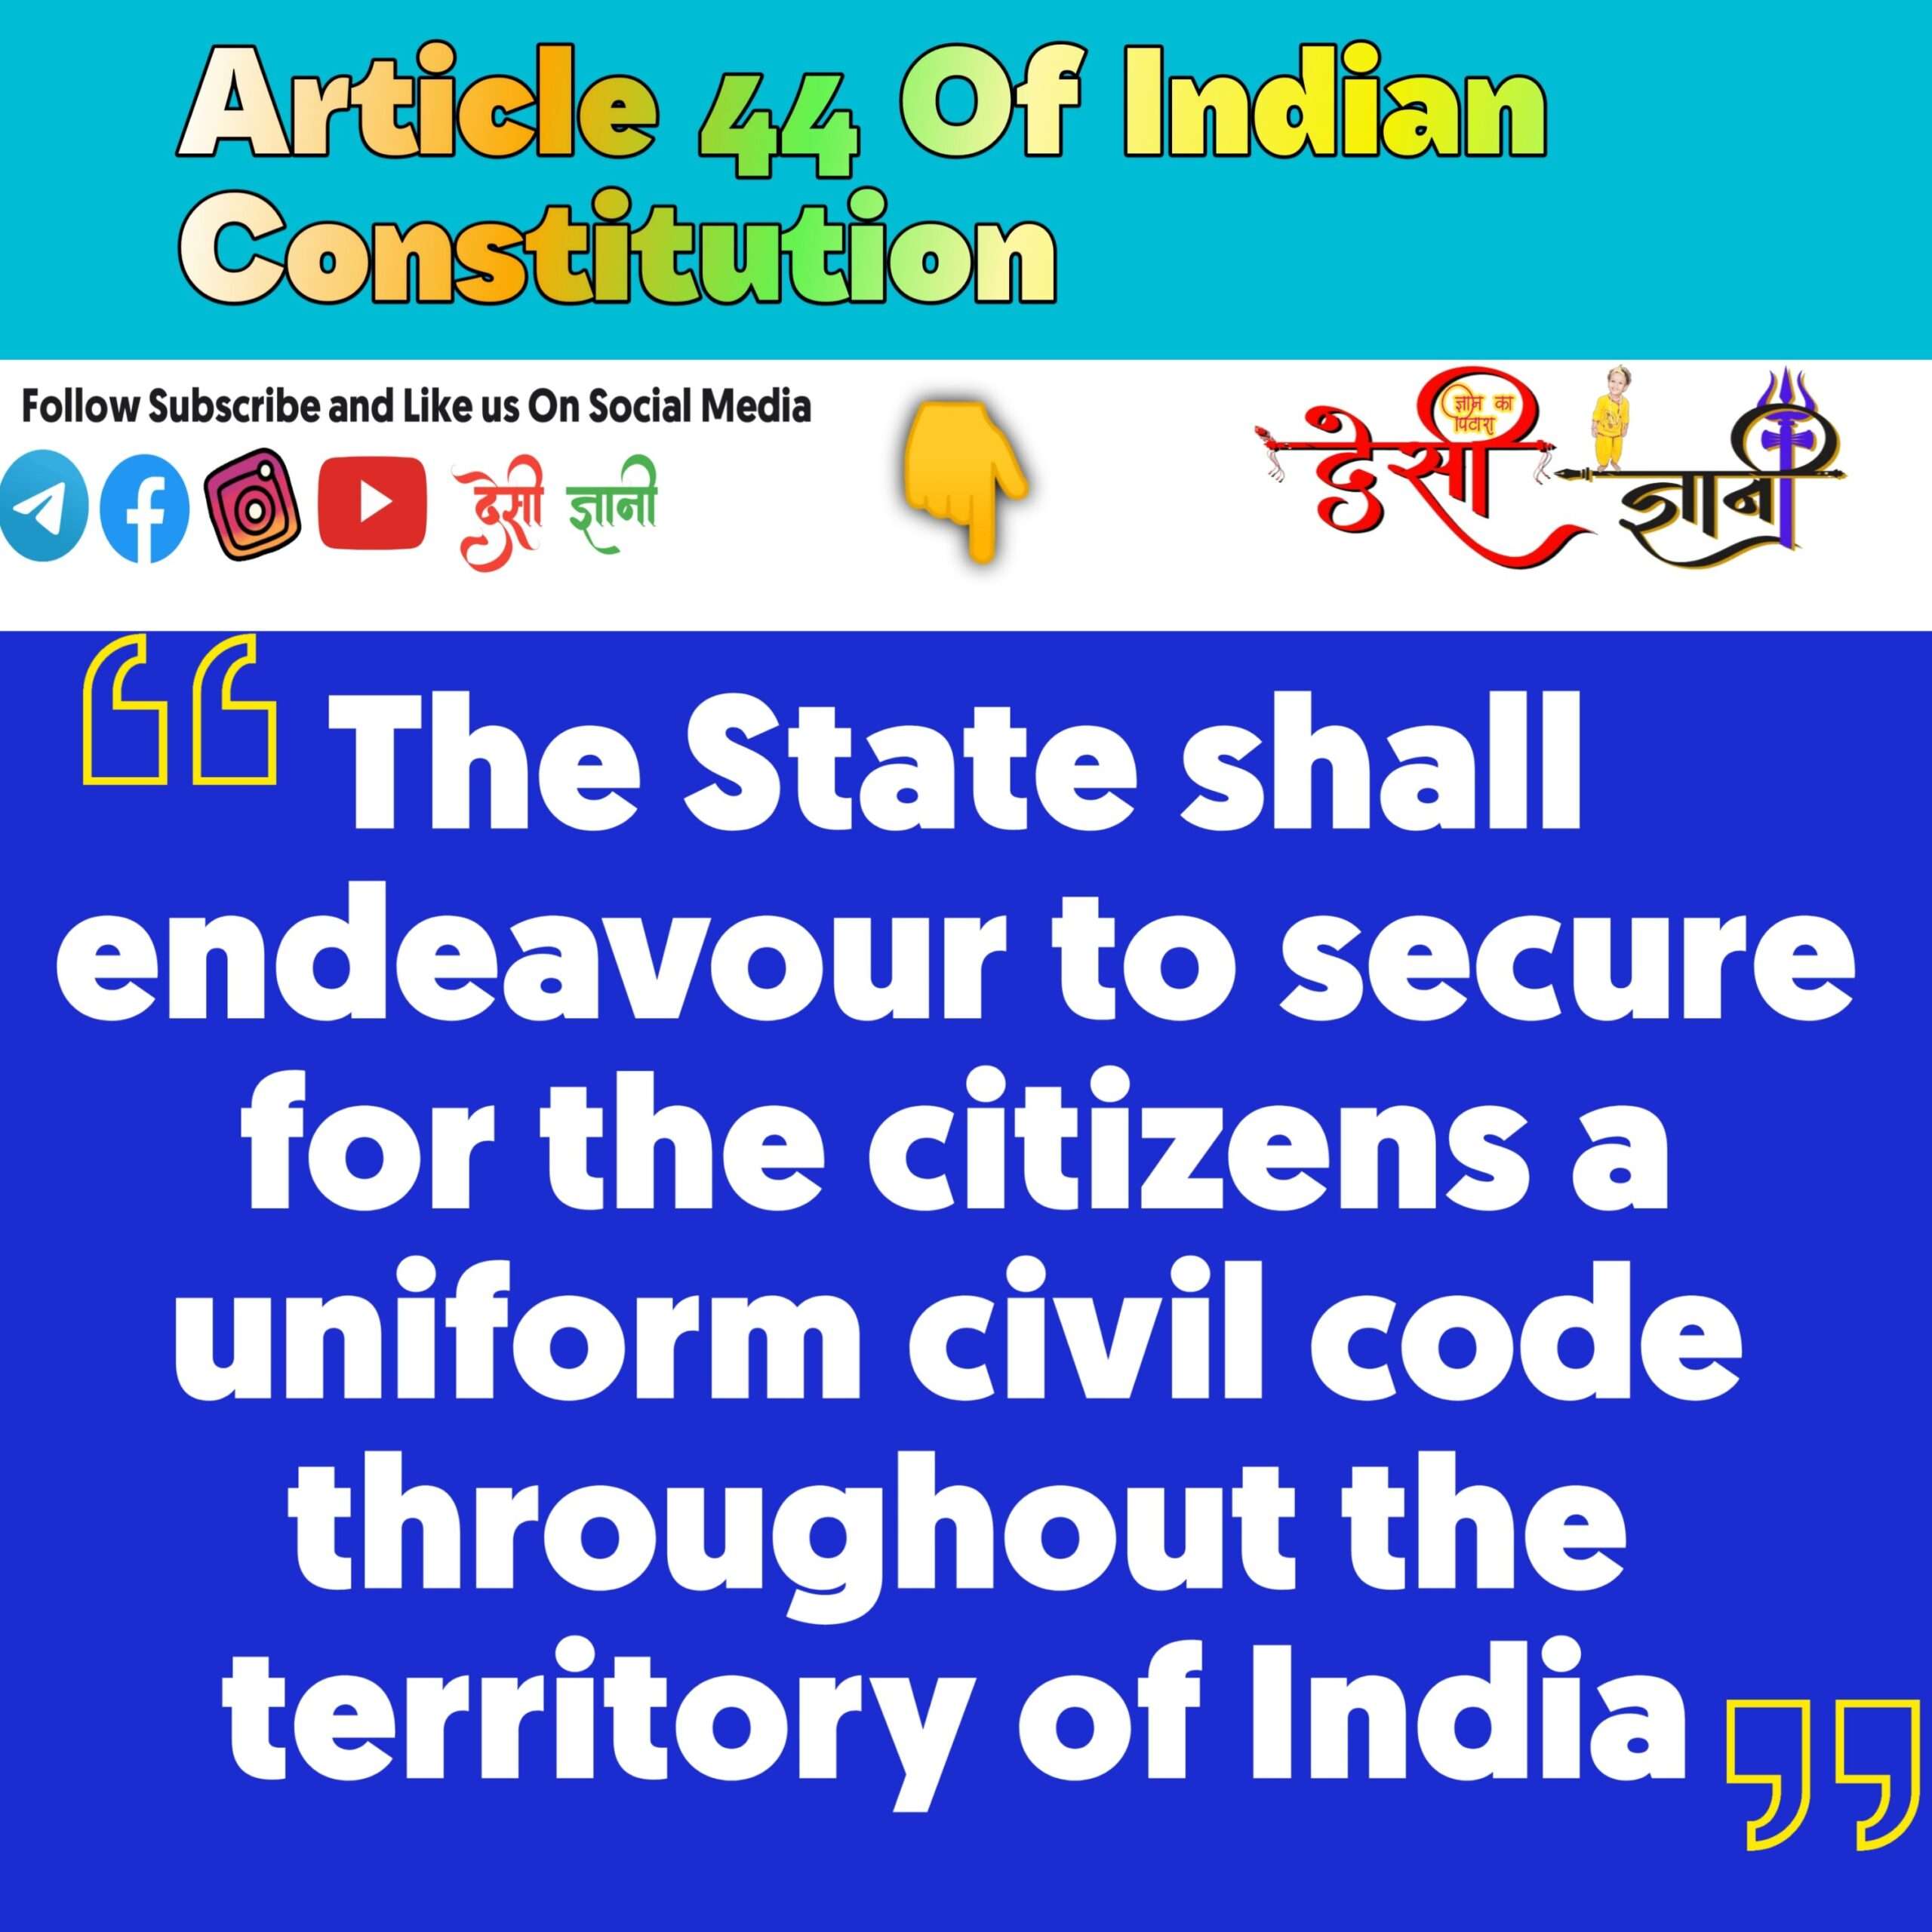 भारतीय संविधान में Article 44 क्या कहता हैं? Desigyani
Why Common Civil Code necessary in India Supreme Court
Uniform Civil code समान नागरिकता क़ानून क्या है और मुसलमान इसका विरोध क्यों करते है?